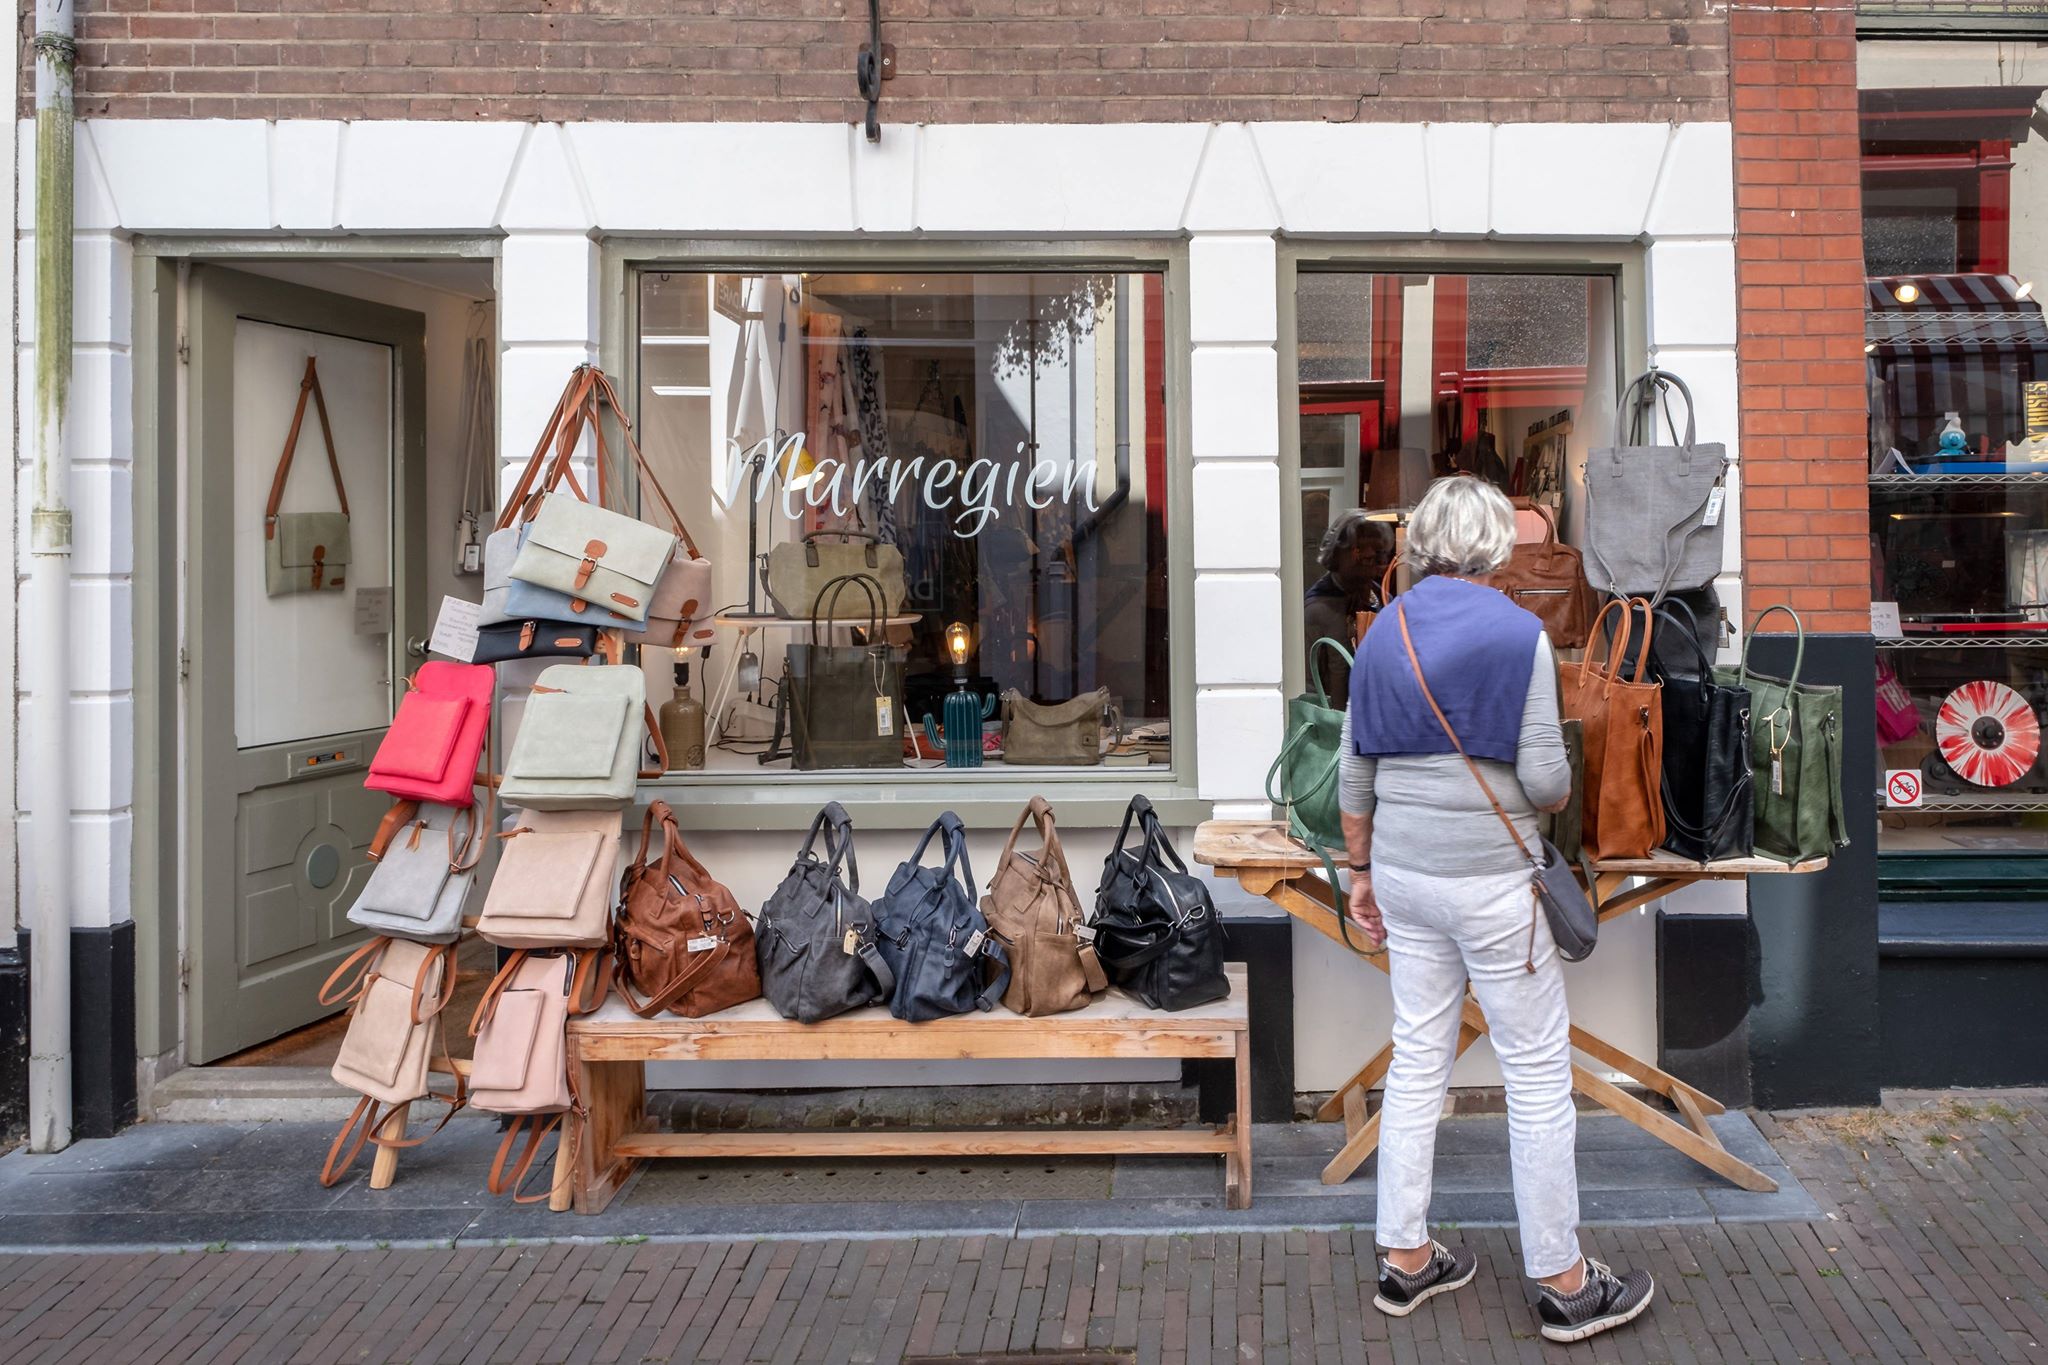 Marregien en meer winkels vind je bij Shoppen in Deventer